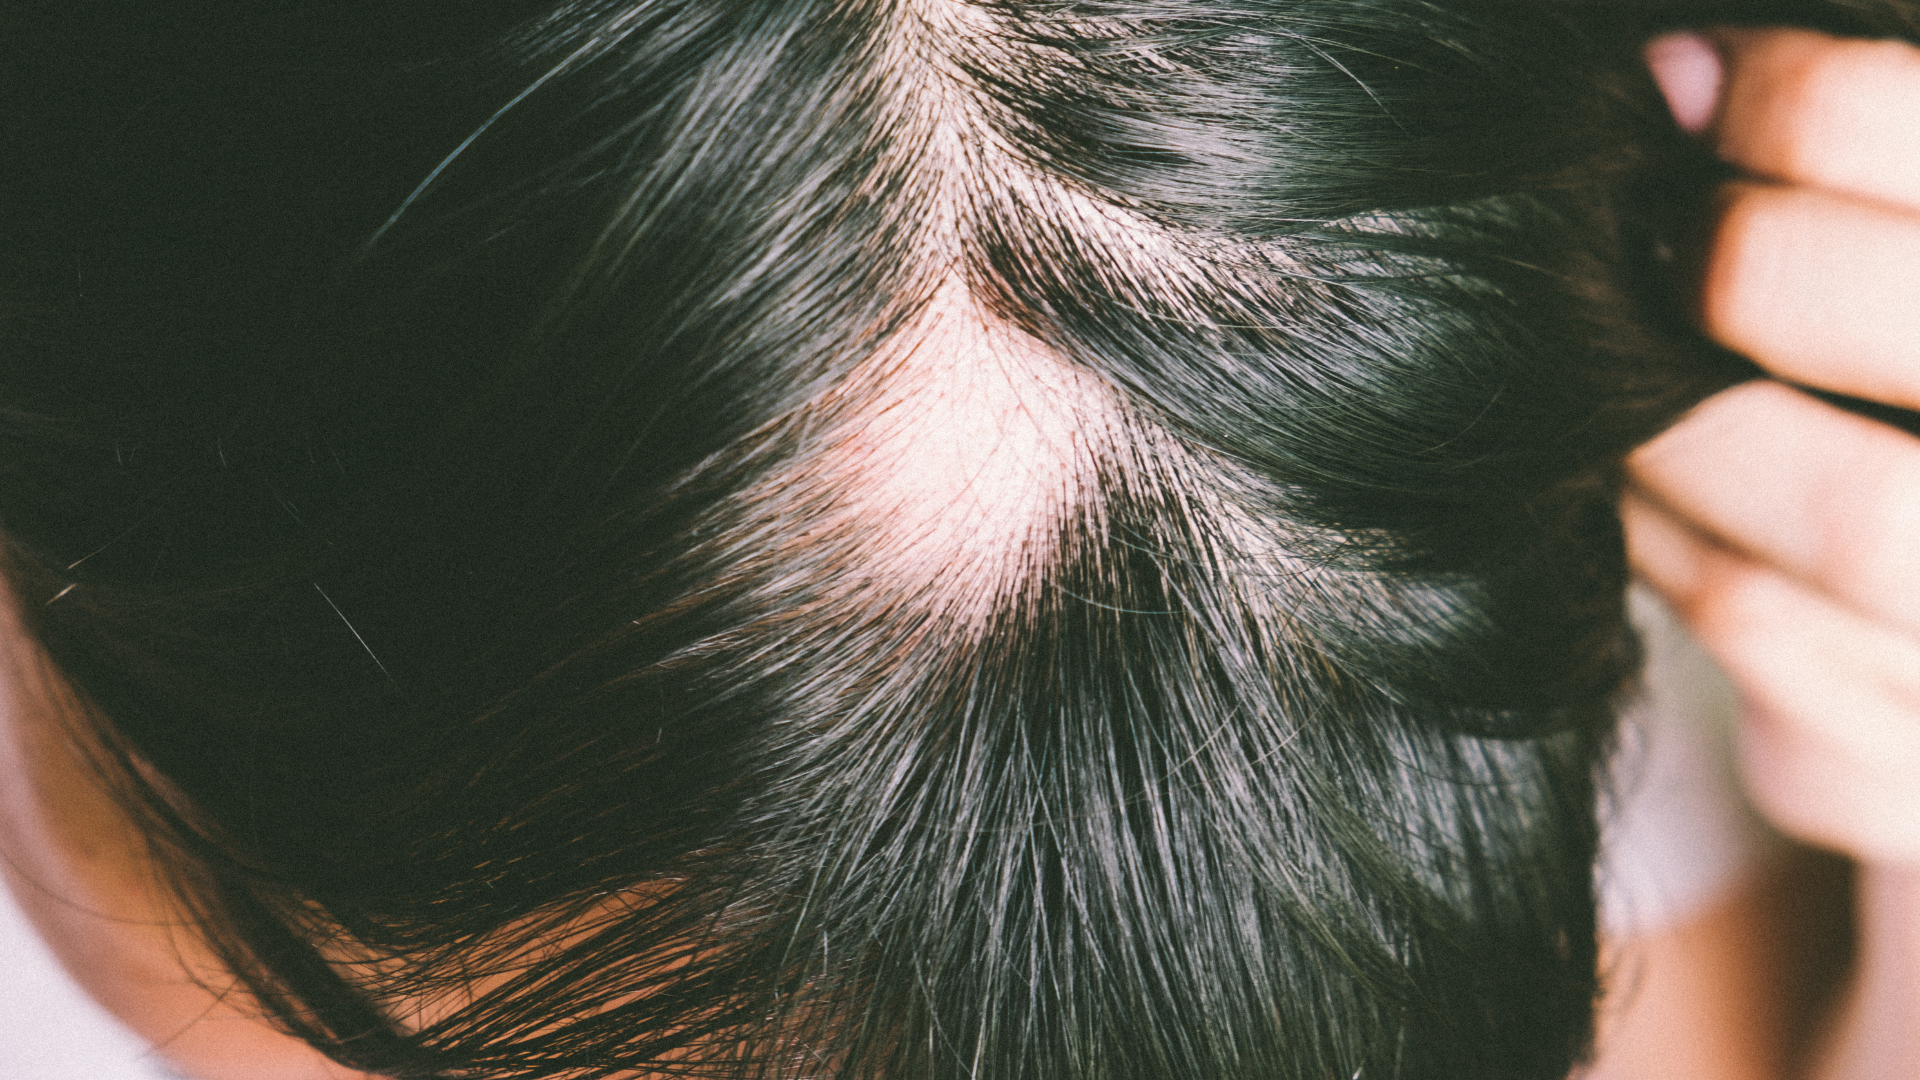 Foto de capa do artigo "Covid-19 e queda de cabelo: por que ocorre? Tem tratamento?"